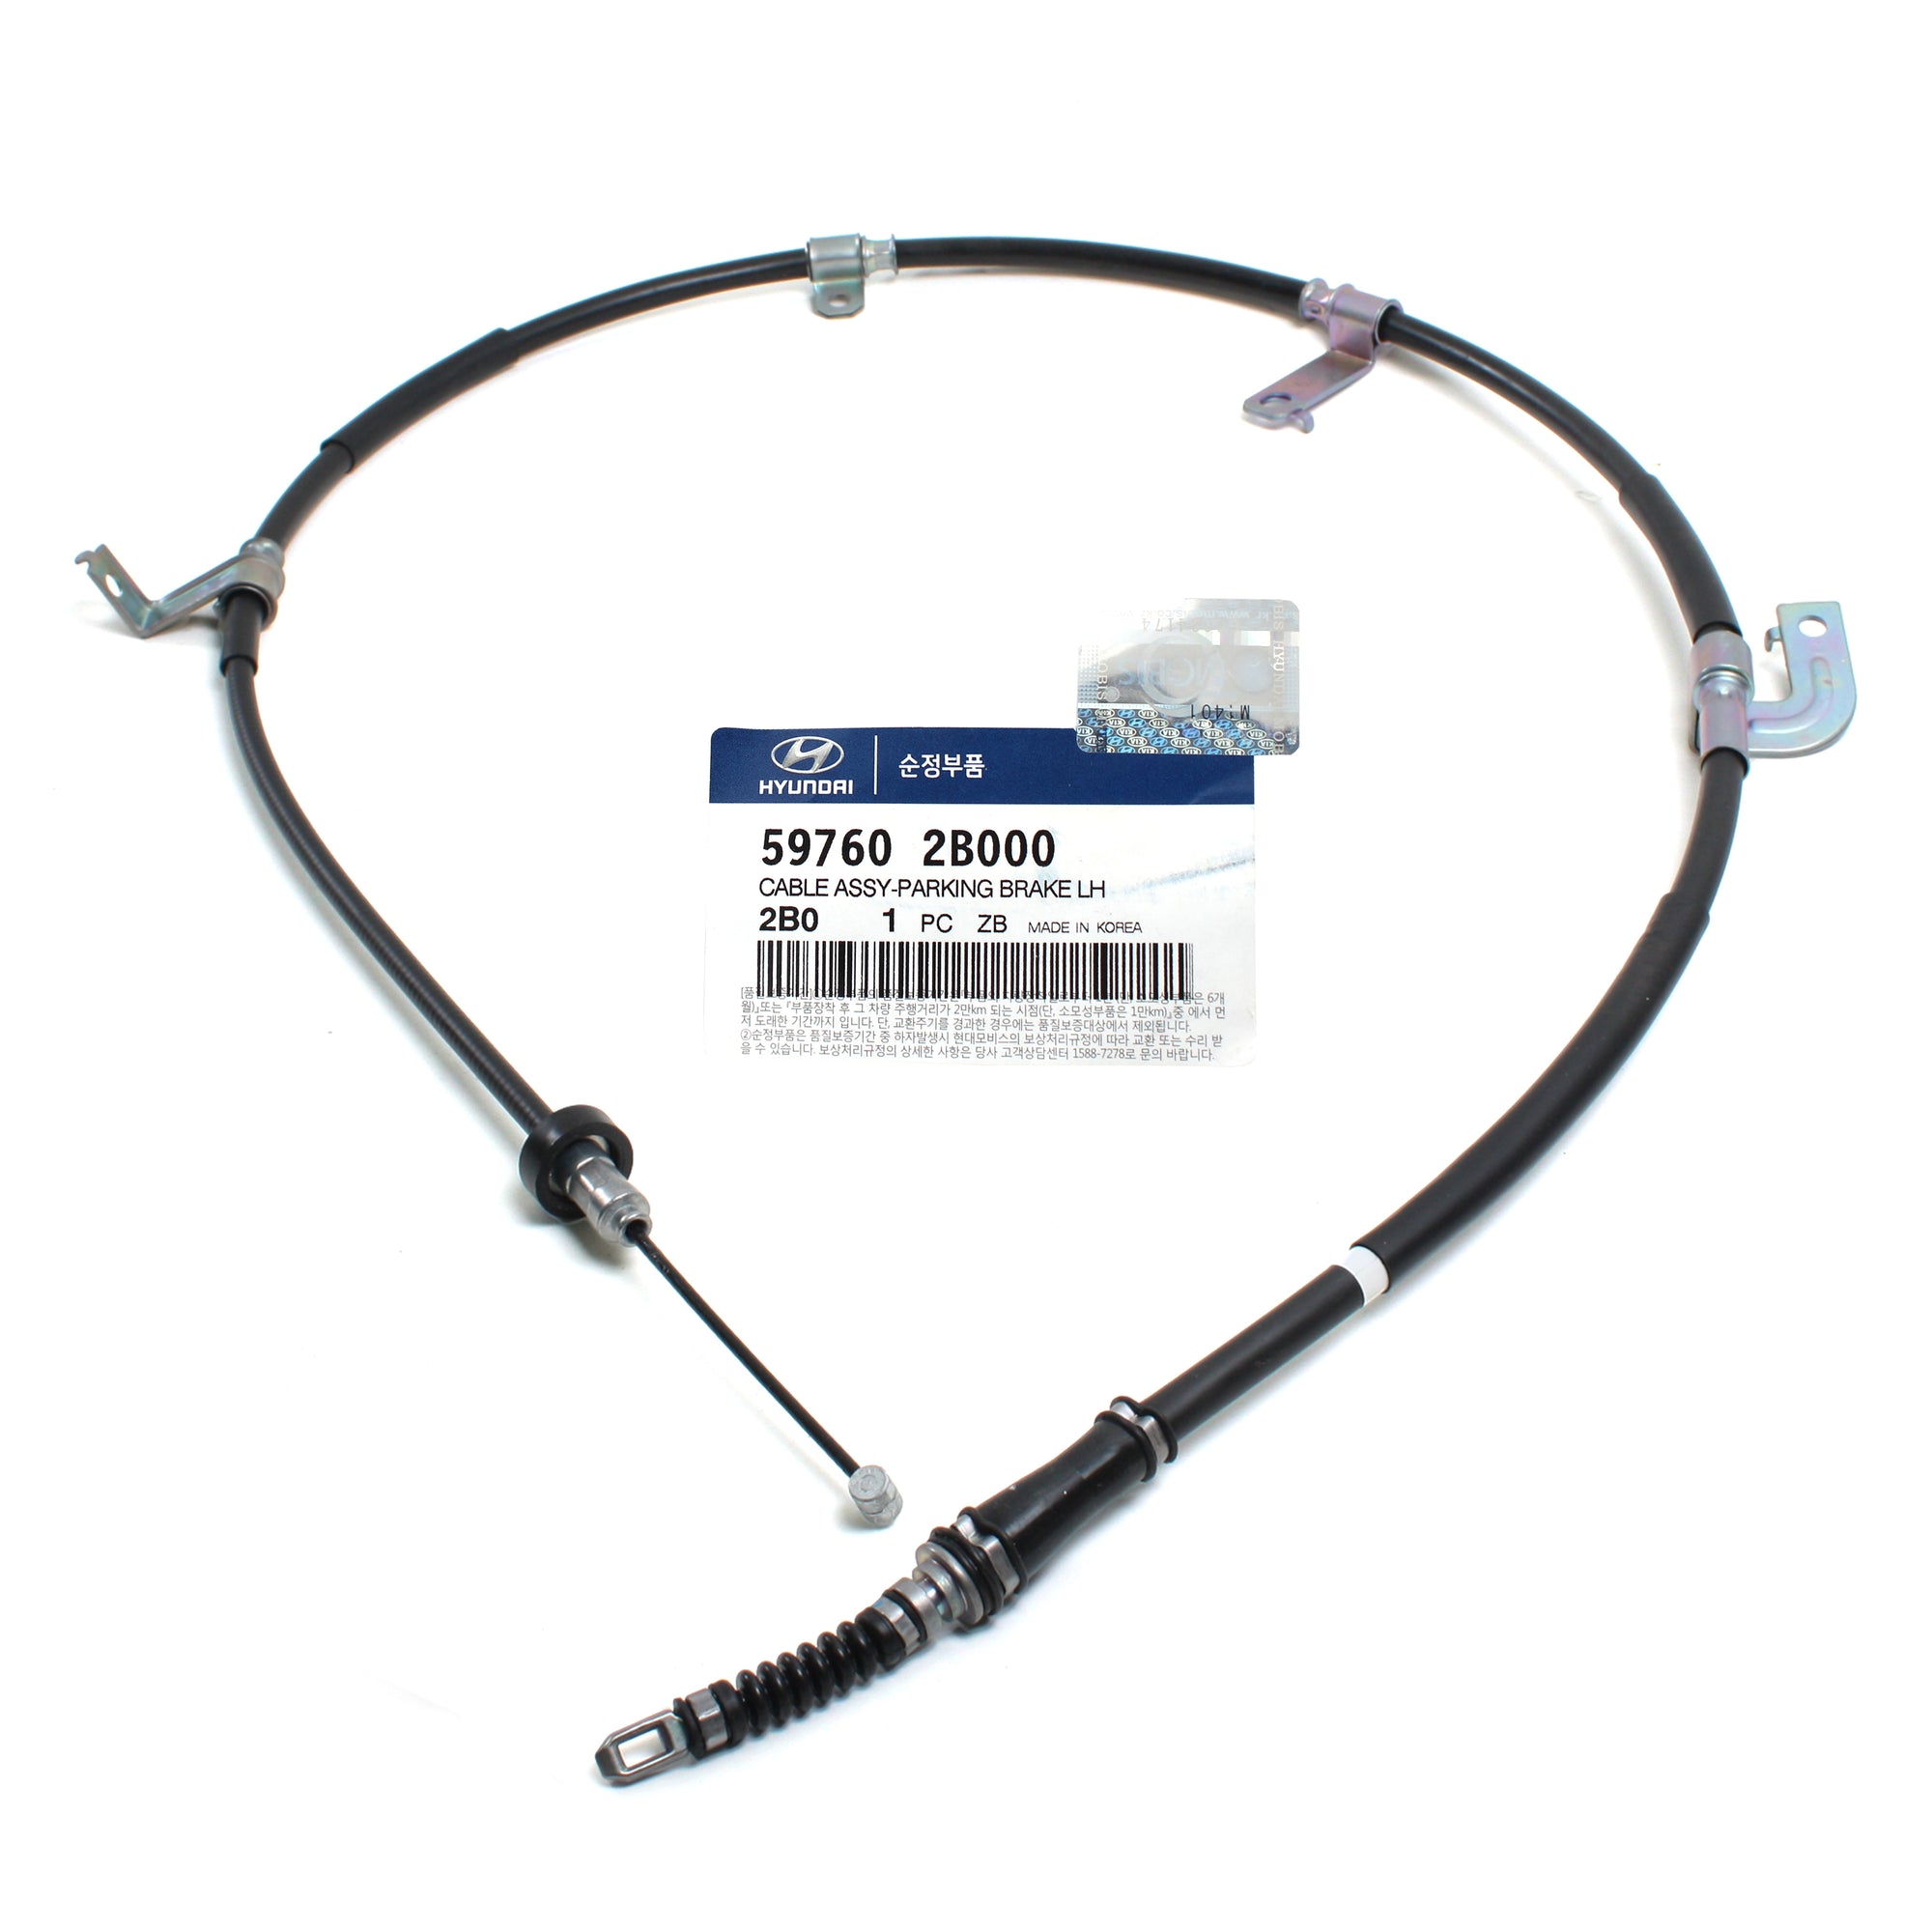 GENUINE Parking Brake Cable REAR LEFT for 06-09 Hyundai Santa Fe 597602B000